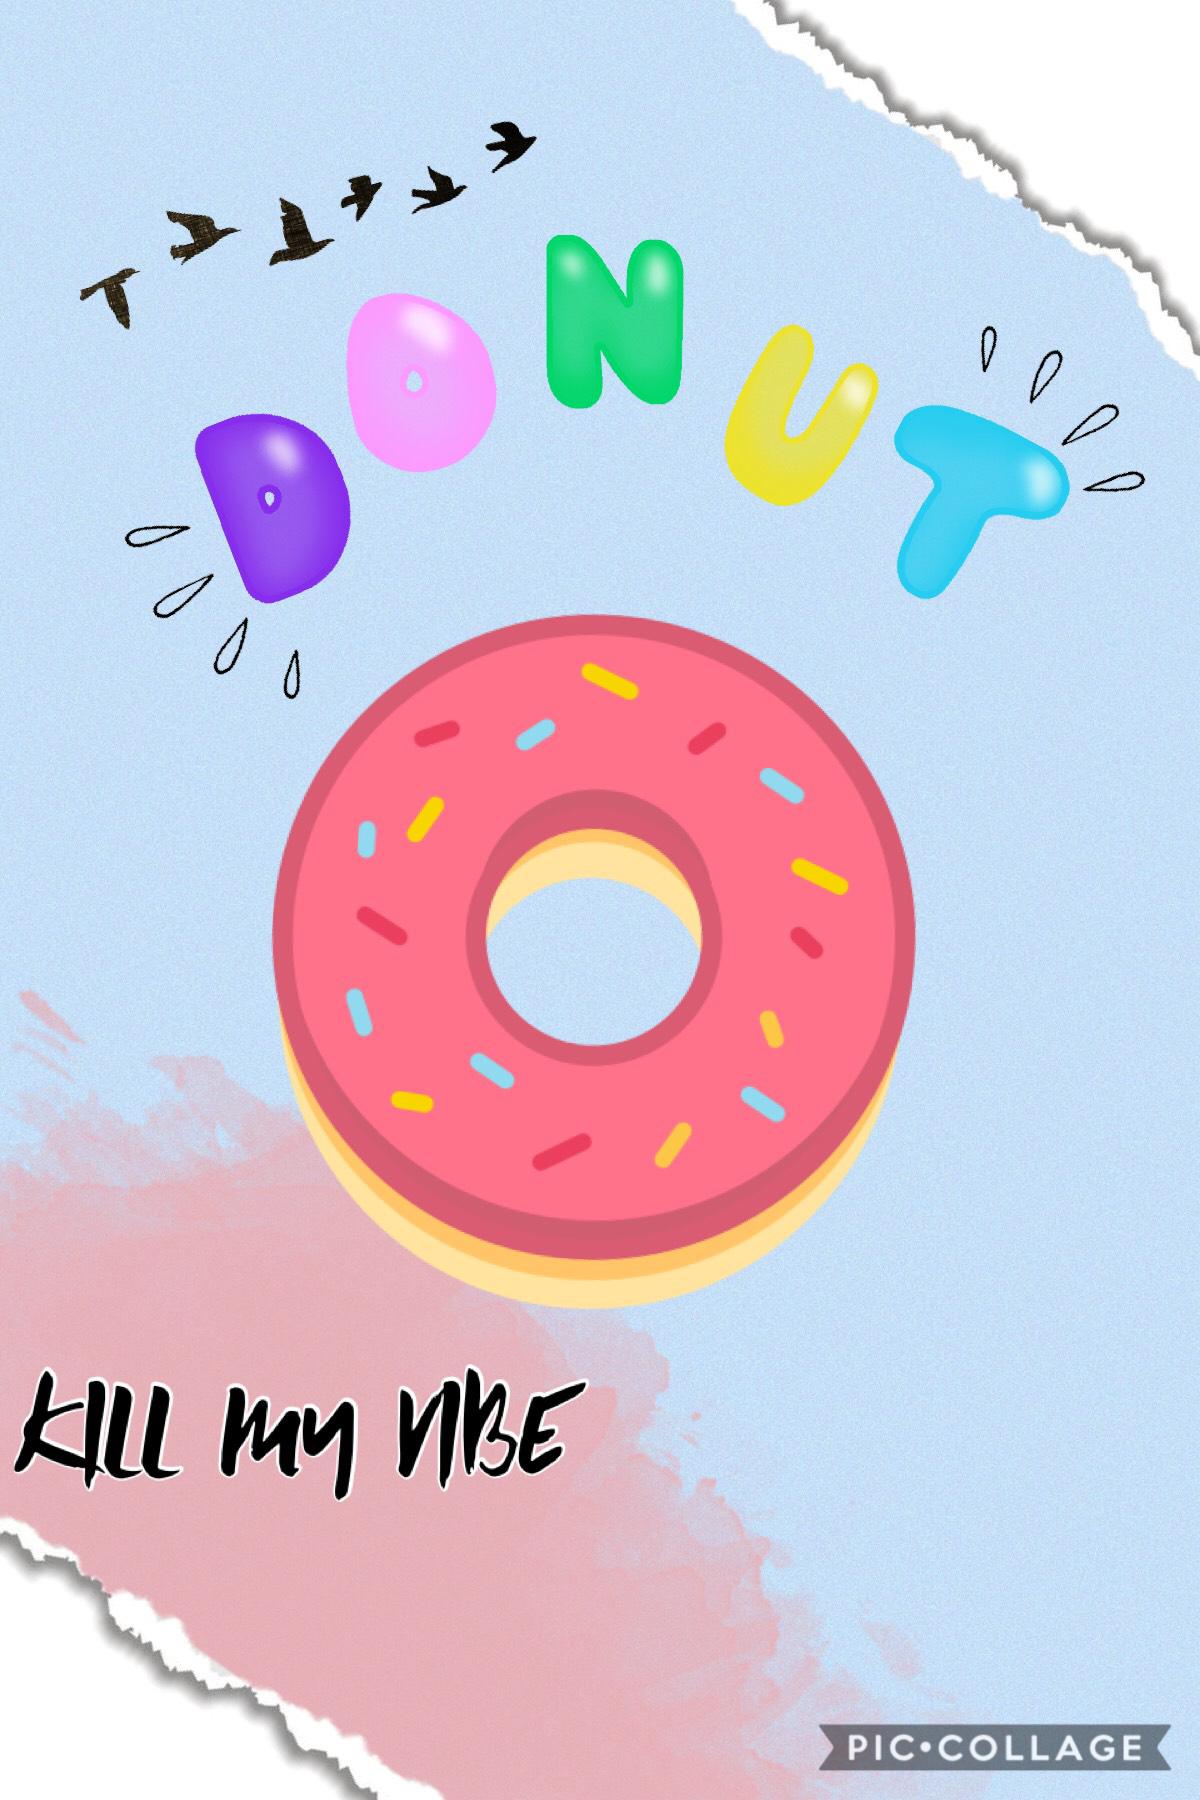 Donut kill my vibe 